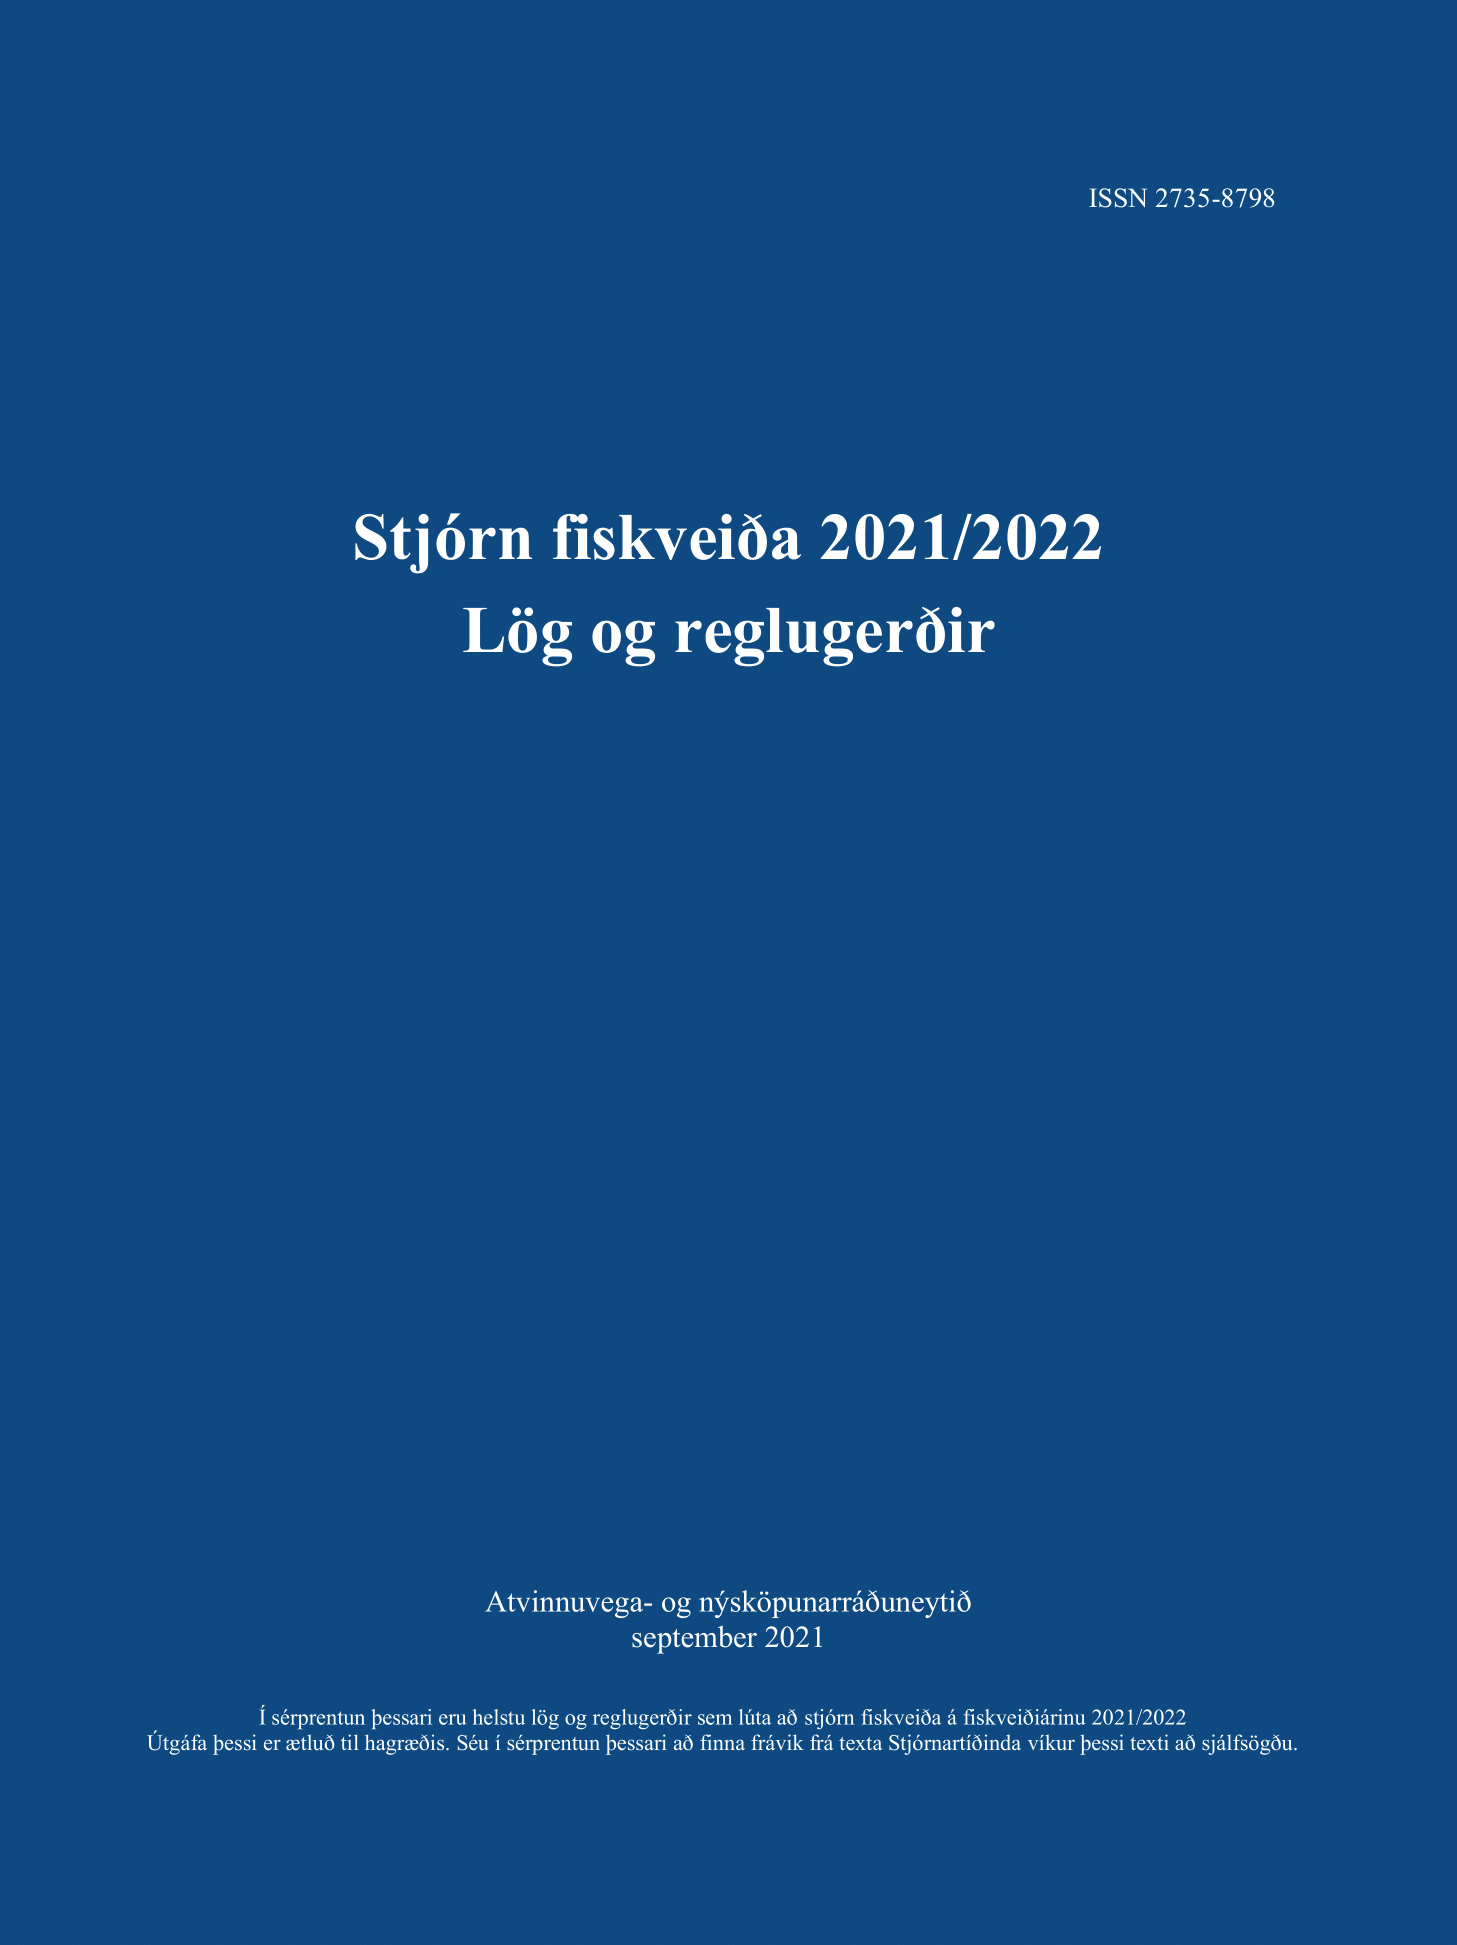 Stjórn fiskveiða 2021/2022 - Lög og reglugerðir - mynd